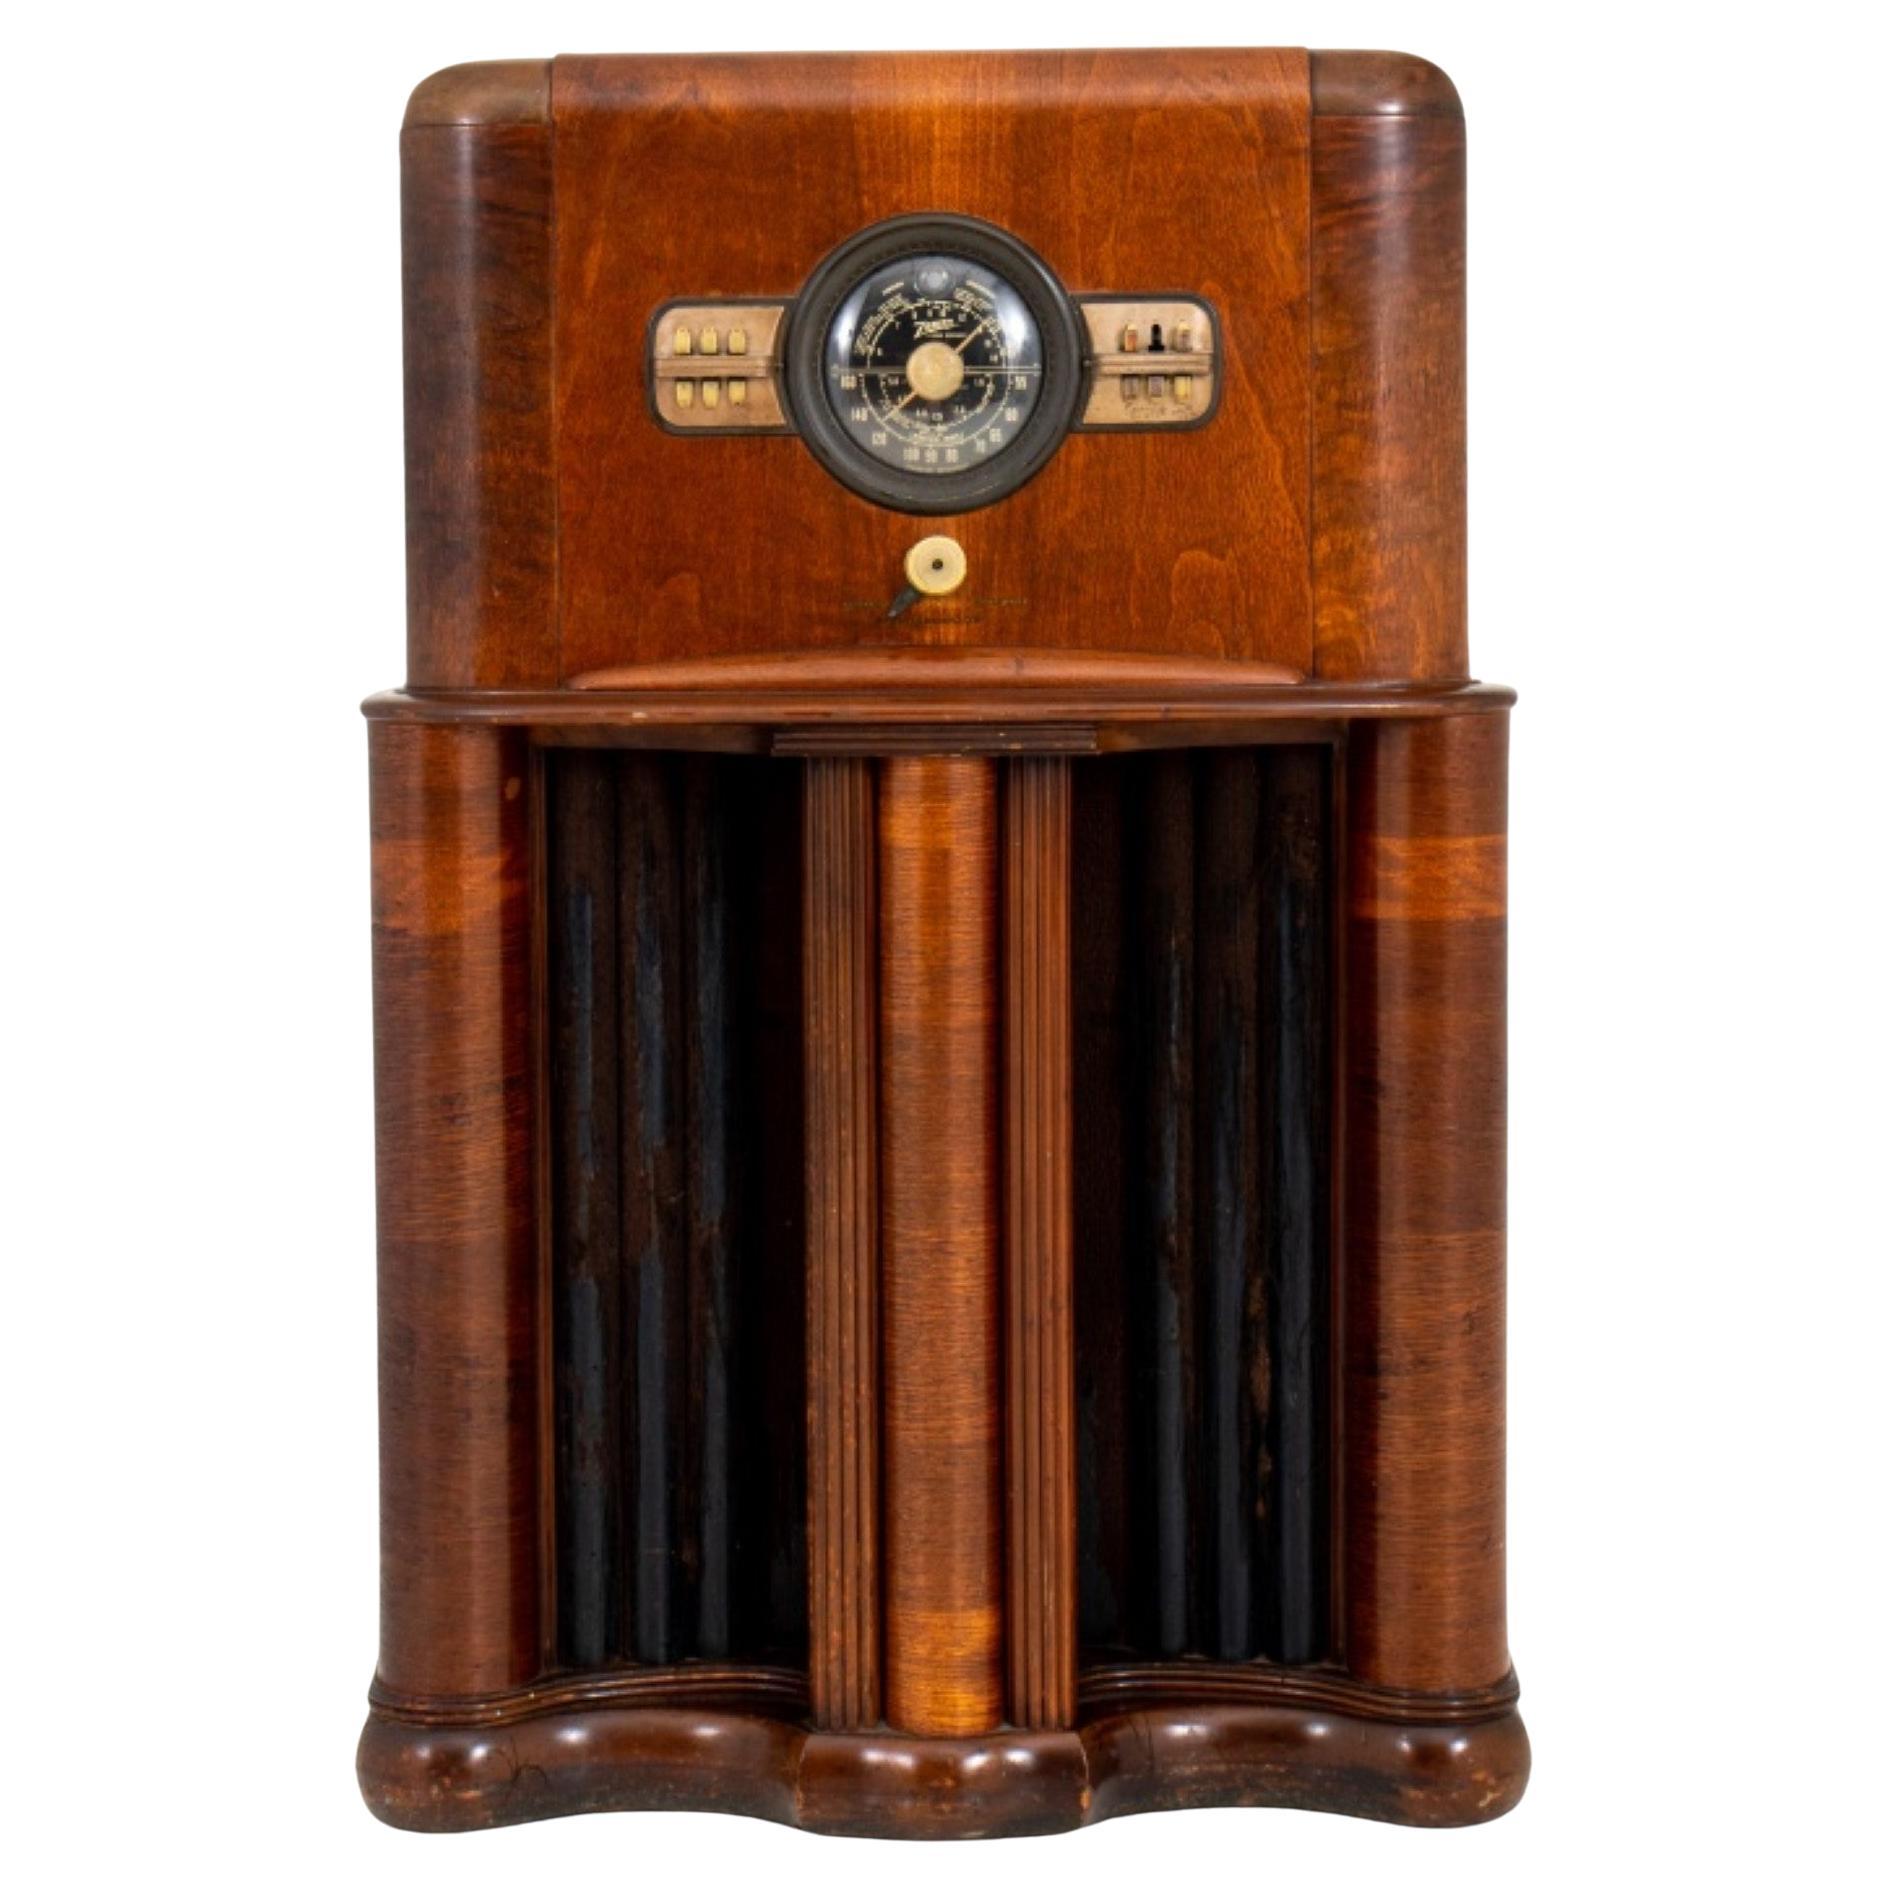 Radio Zenith modèle 11S474 « Long distance » vintage